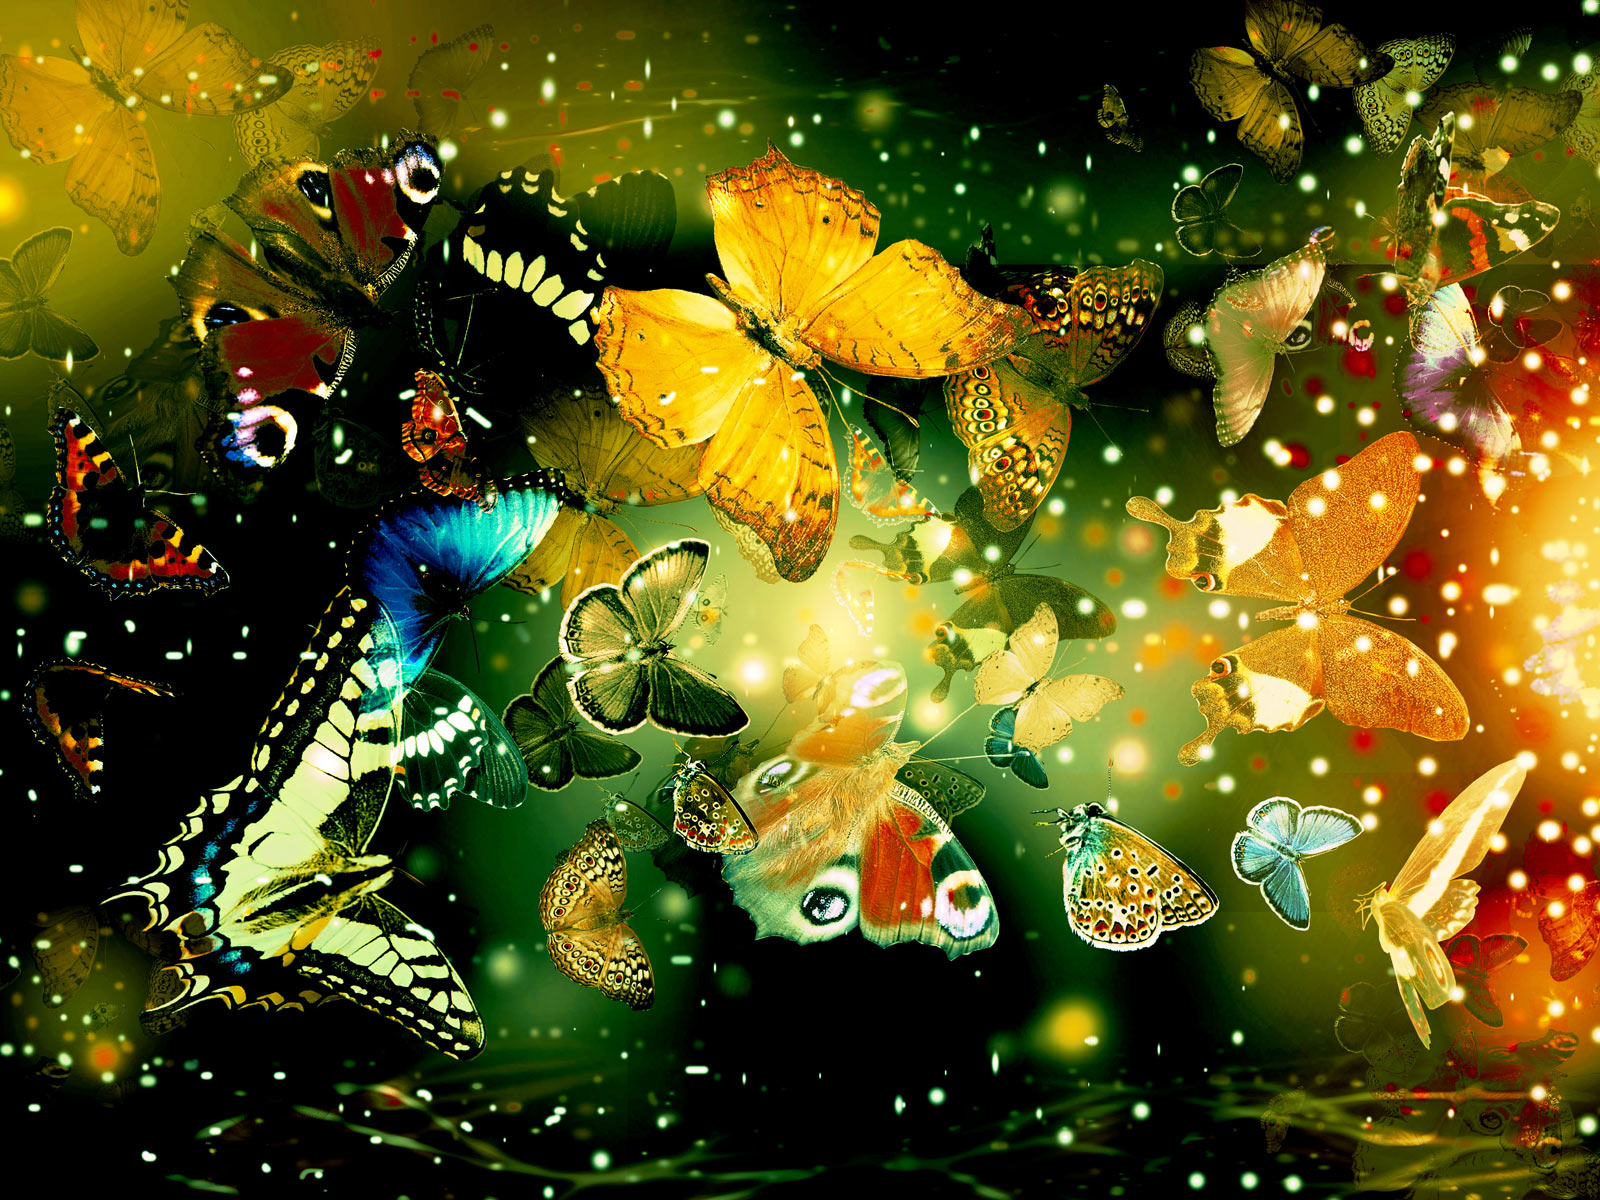 Wallpapers Hd Desktop Wallpapers Free Online Desktop Afalchi Free images wallpape [afalchi.blogspot.com]